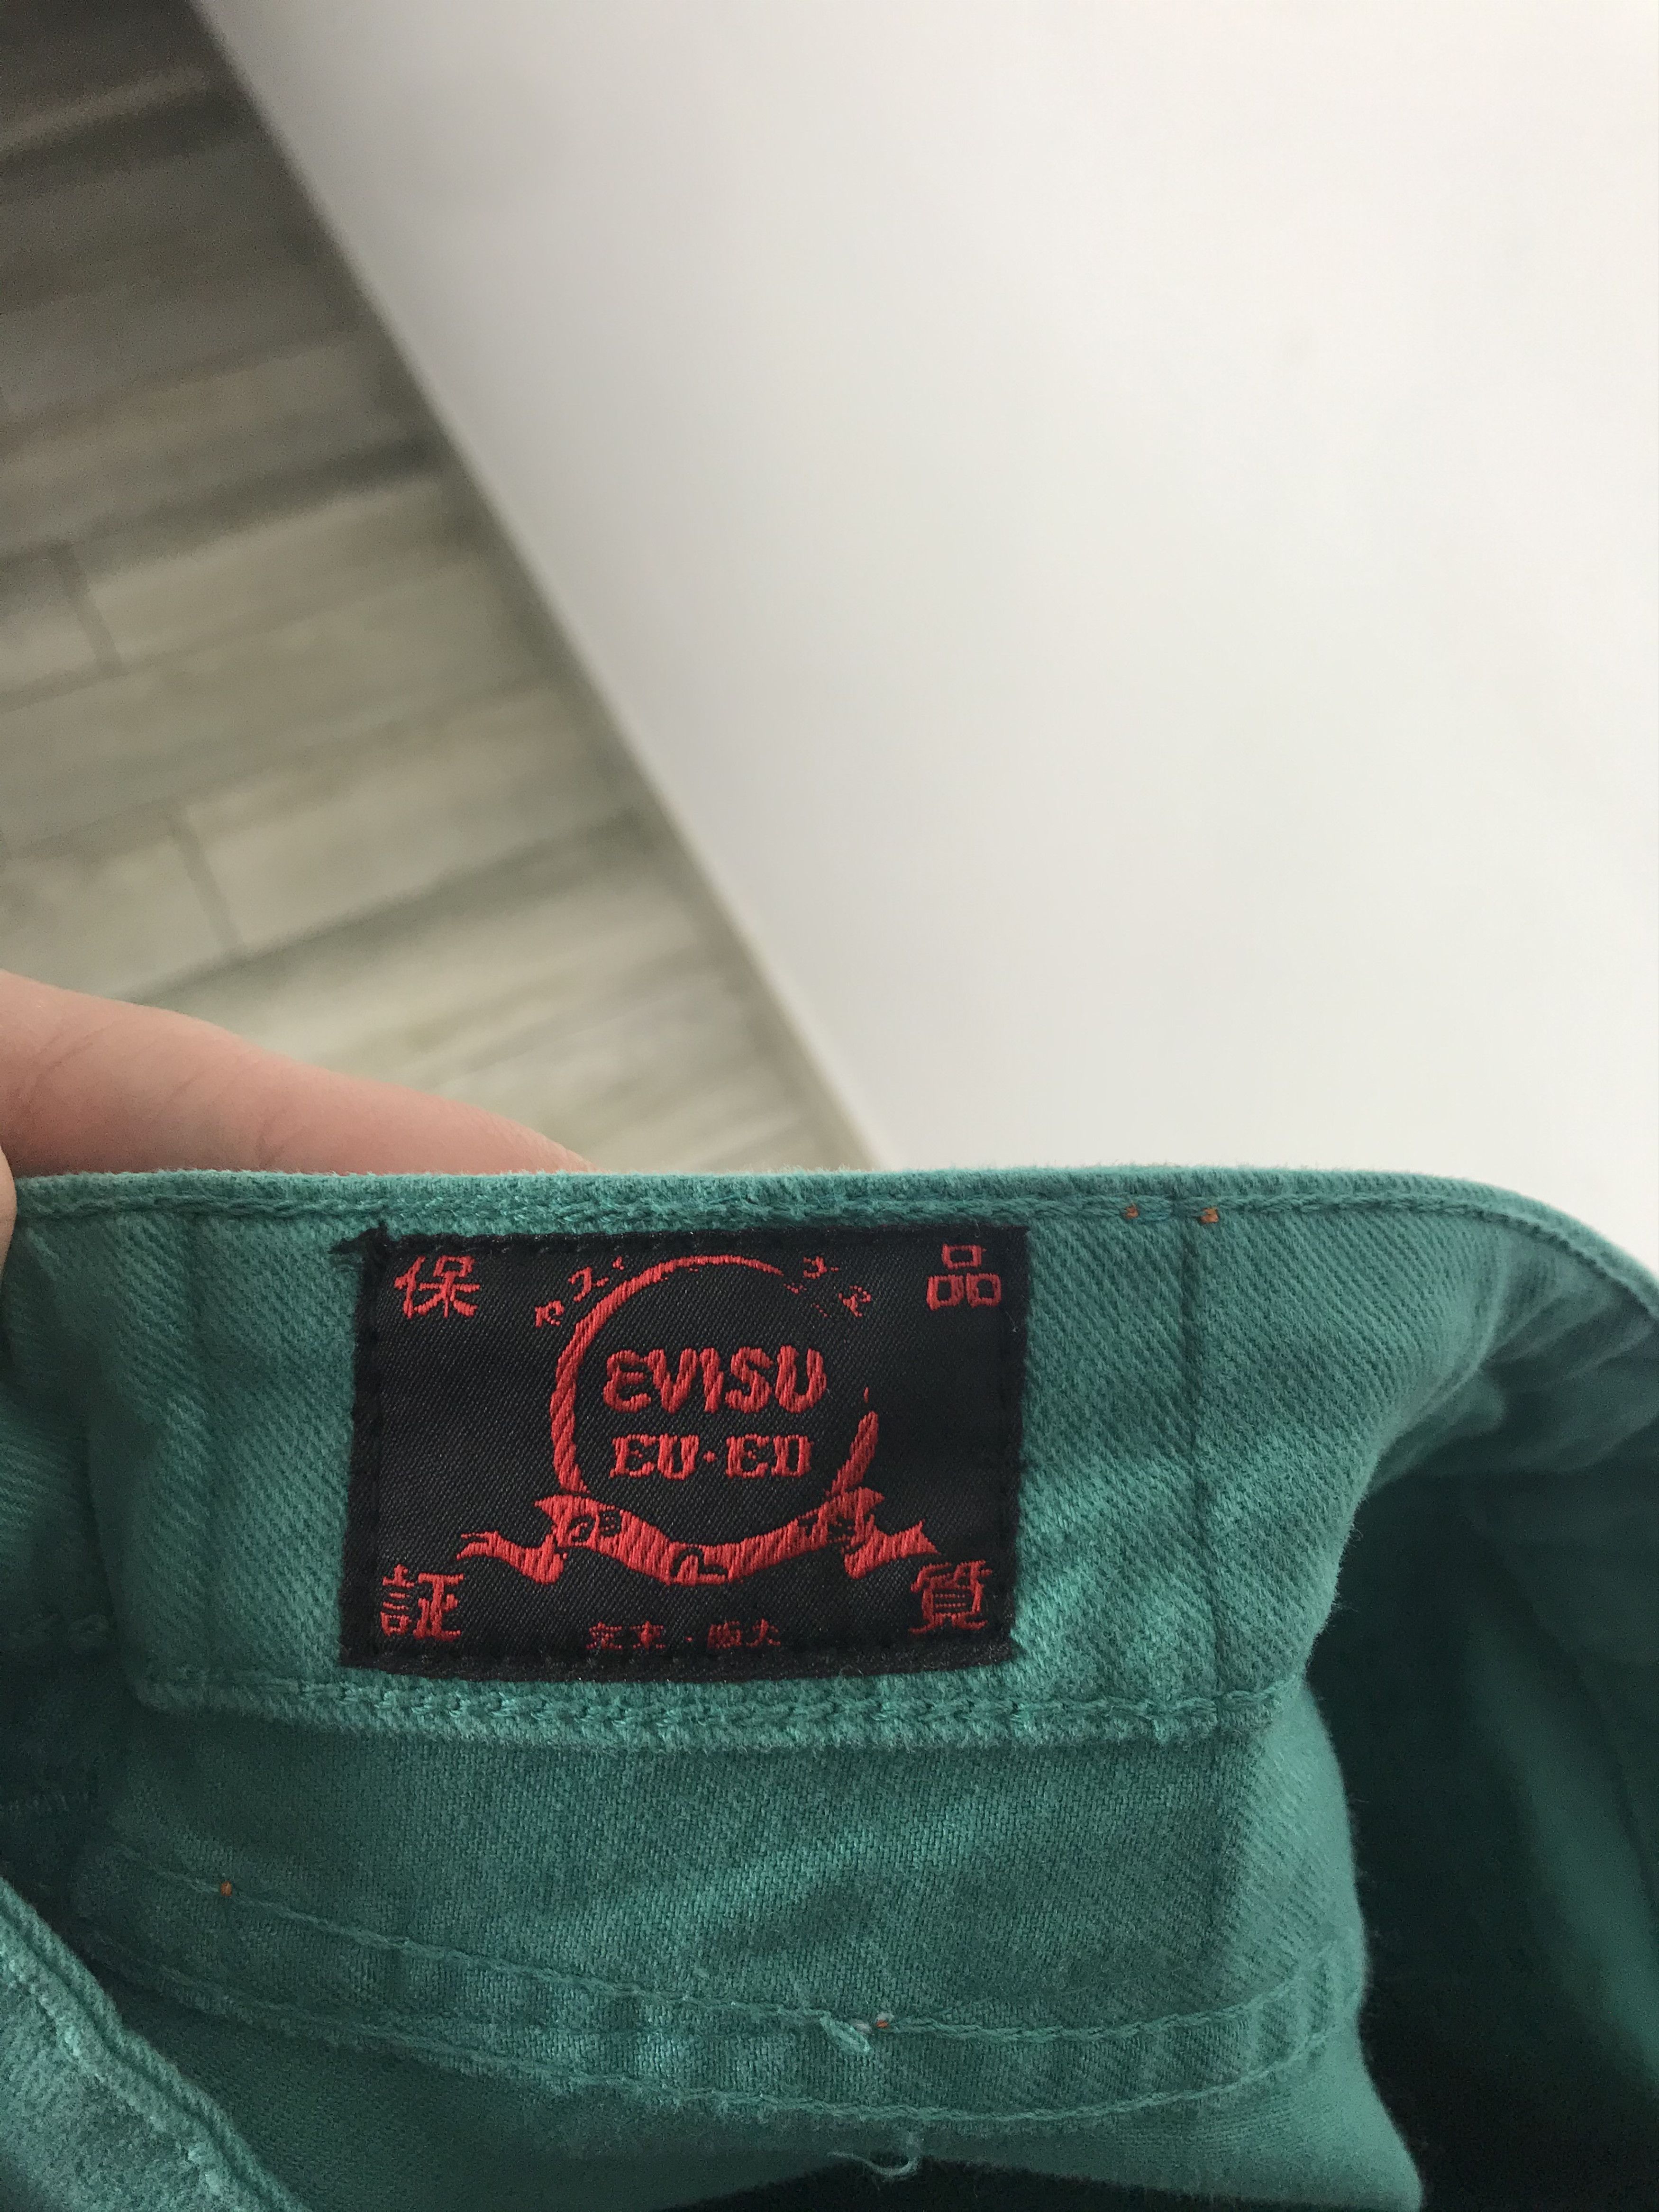 Vintage WMNS Evisu jeans pants DSWT Size US 28 / EU 44 - 13 Preview